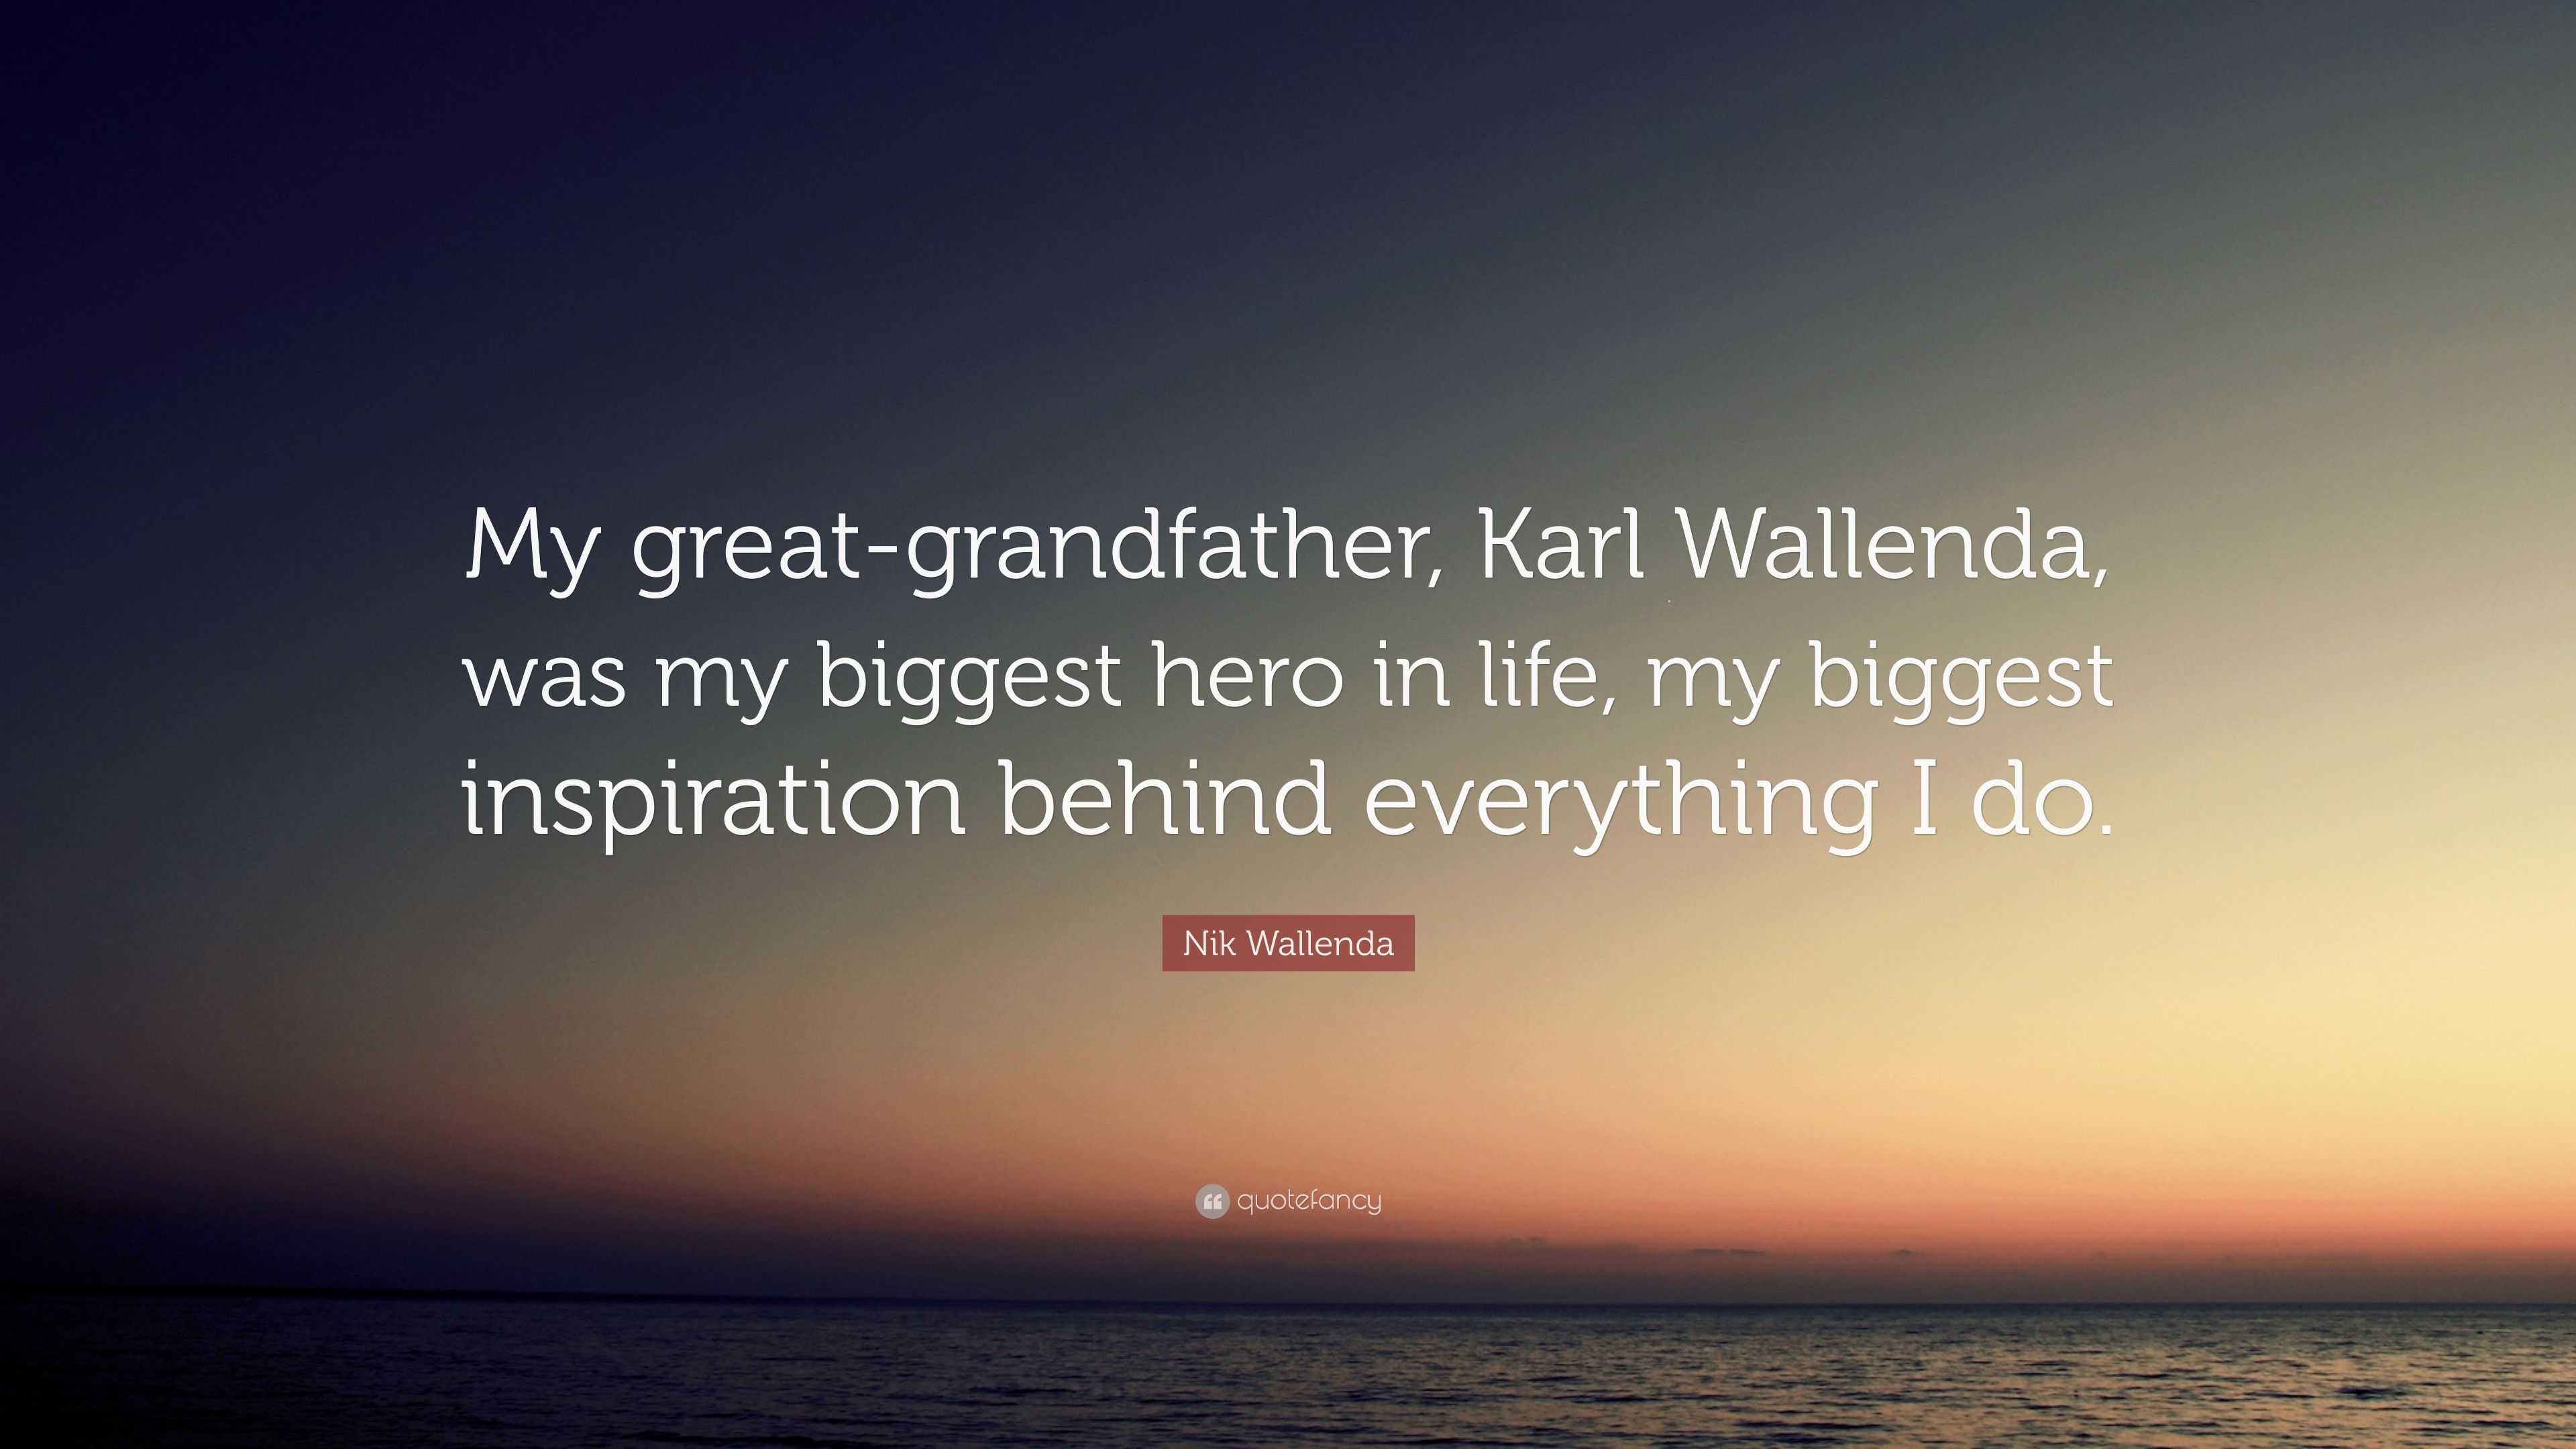 reserva Mezquita ancla Nik Wallenda Quote: “My great-grandfather, Karl Wallenda, was my biggest  hero in life, my biggest